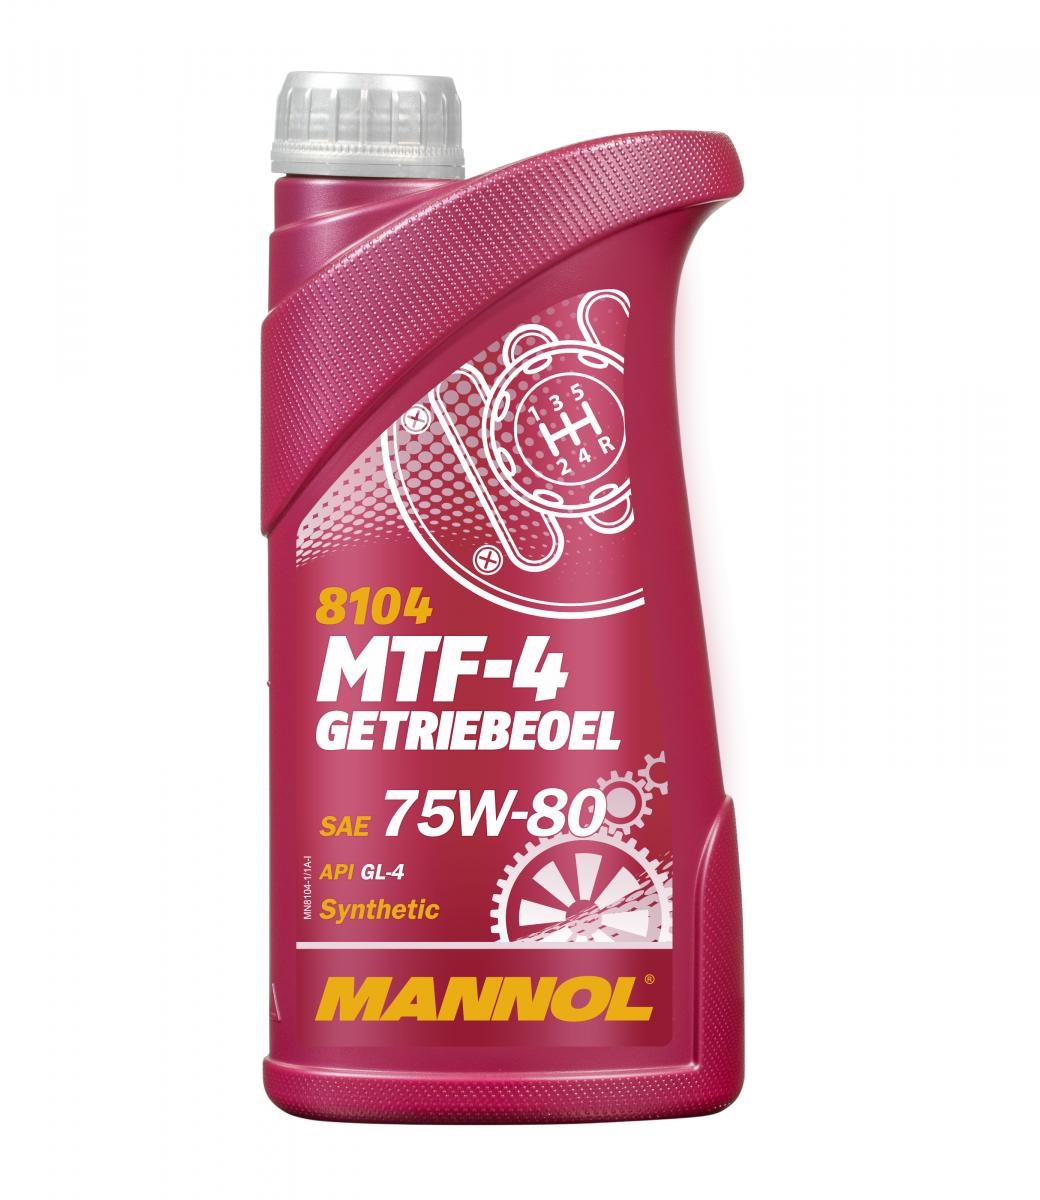 MANNOL MTF-4, GL-4 MN8104-1 TURBHO Getriebeöl Motorrad zum günstigen Preis